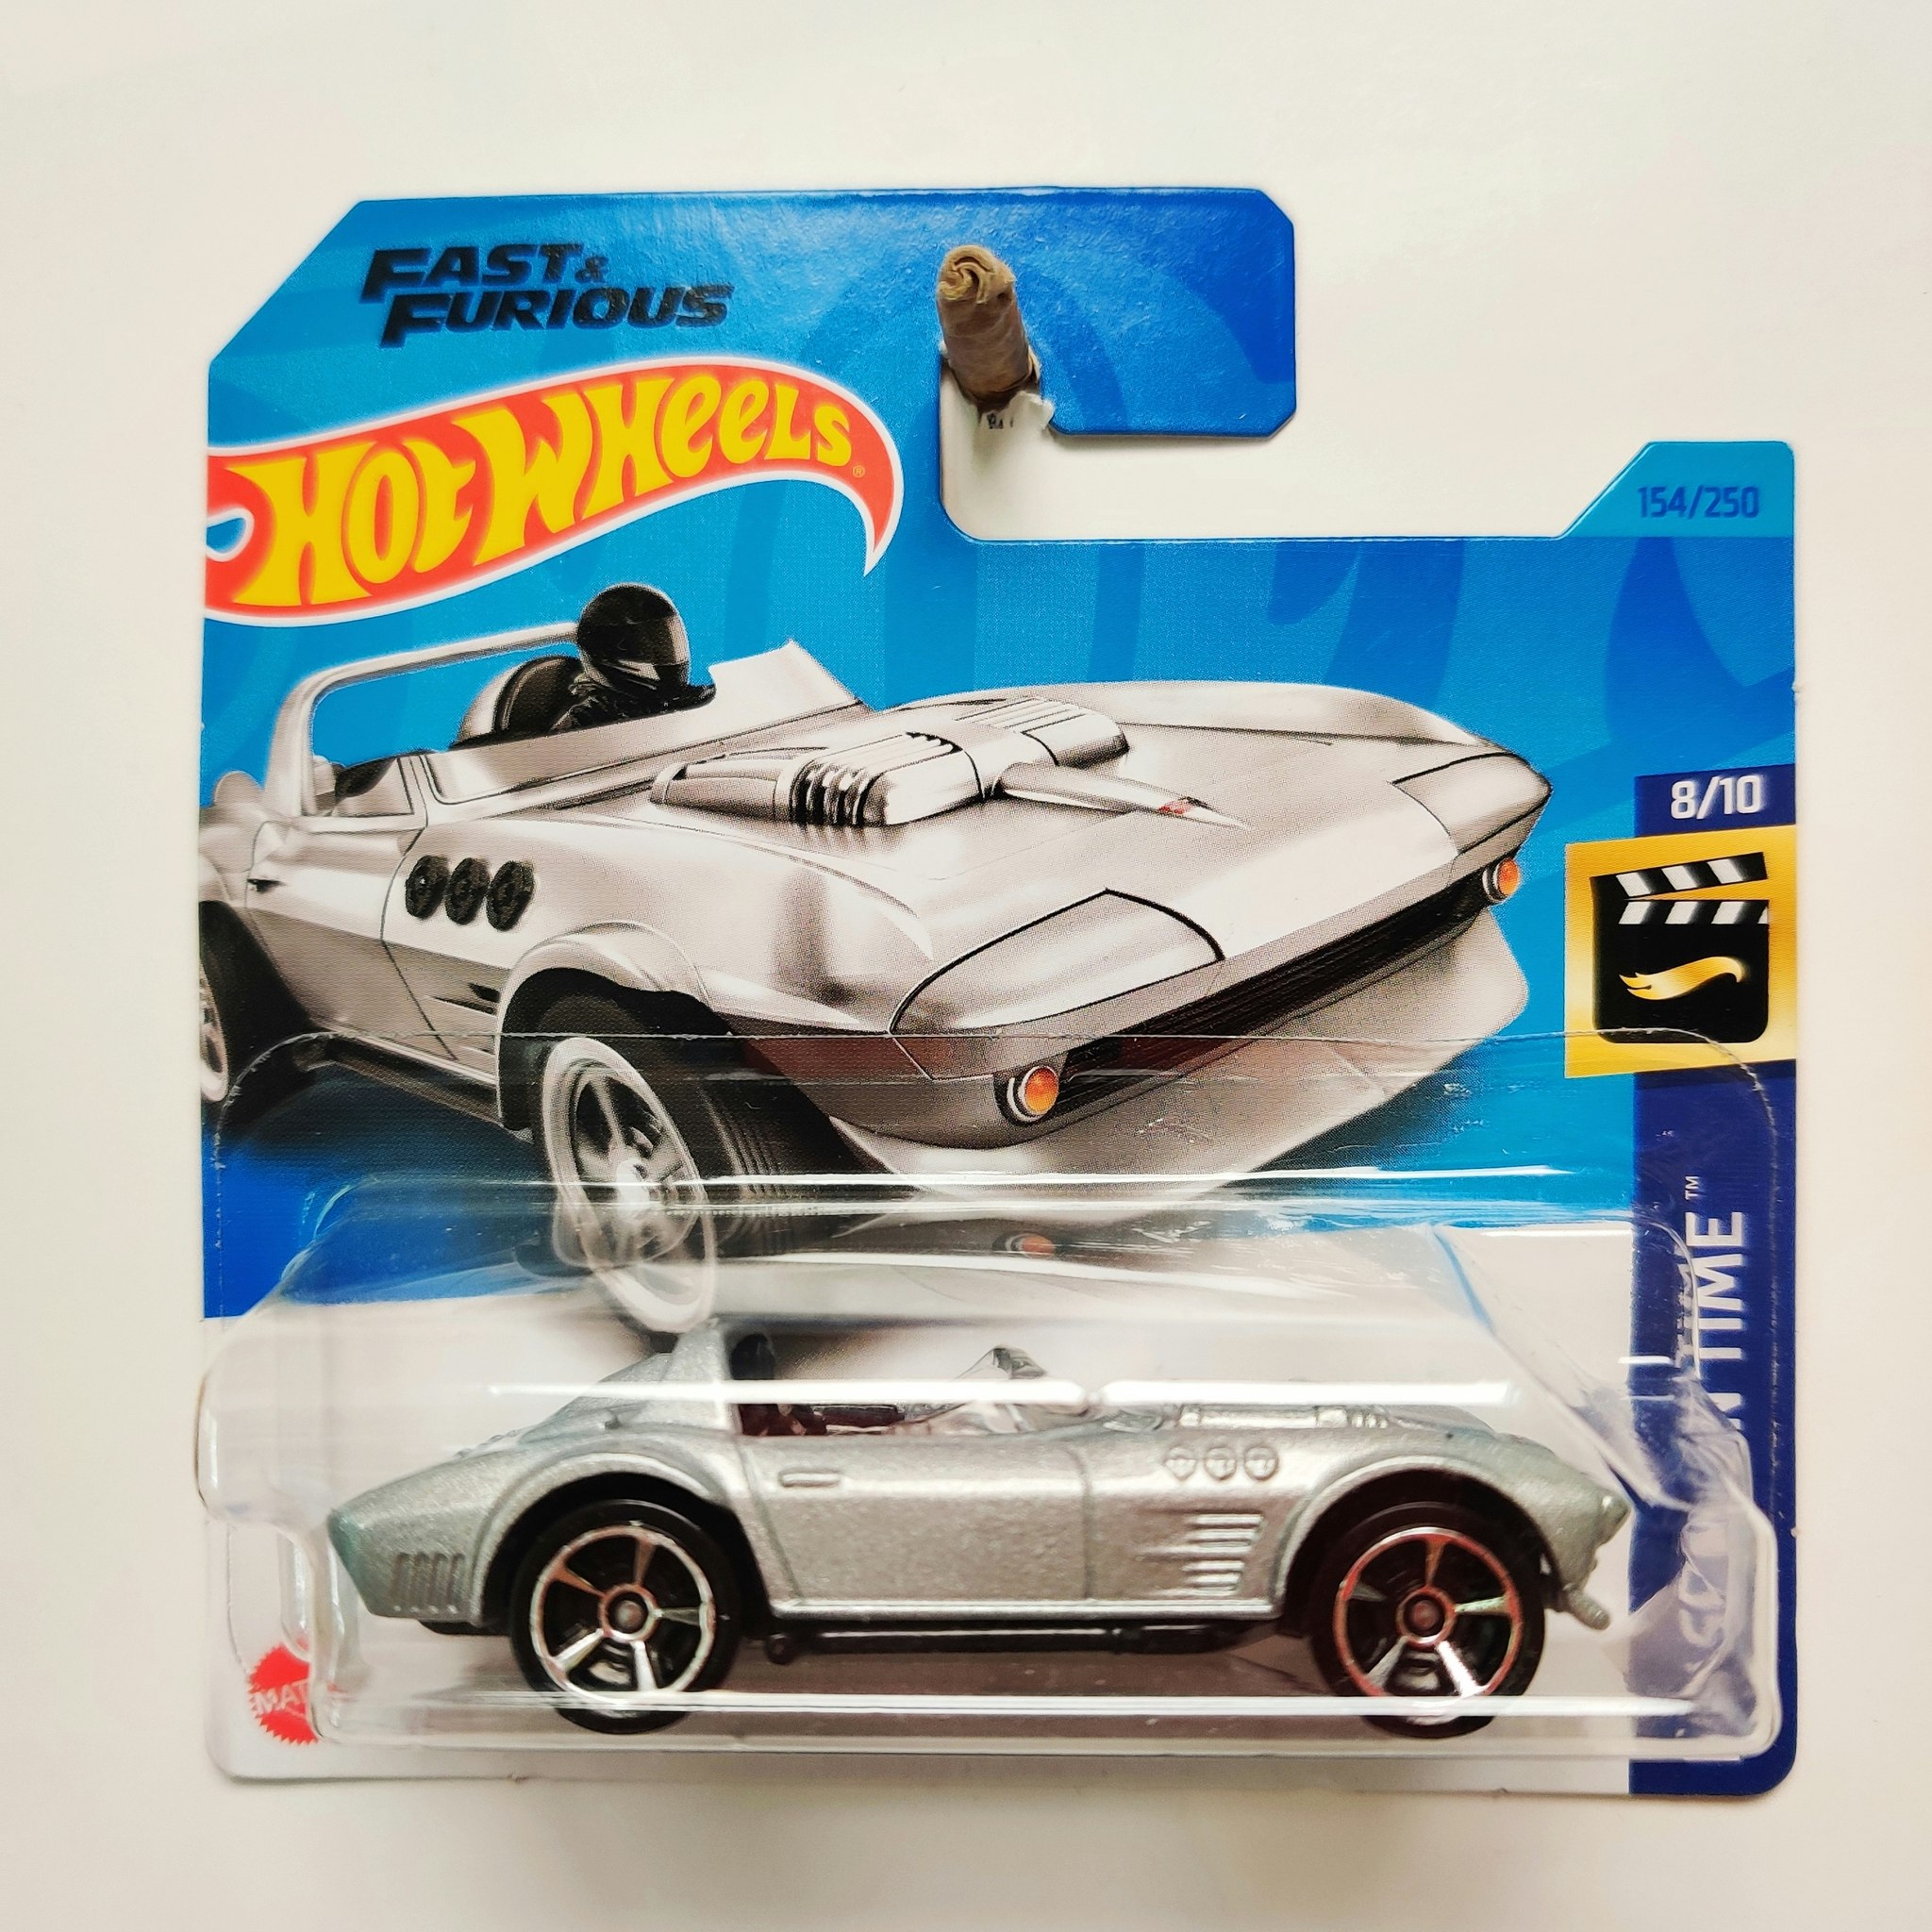 Skala 1/64, Hot Wheels: Corvette Grand Sport Roadster